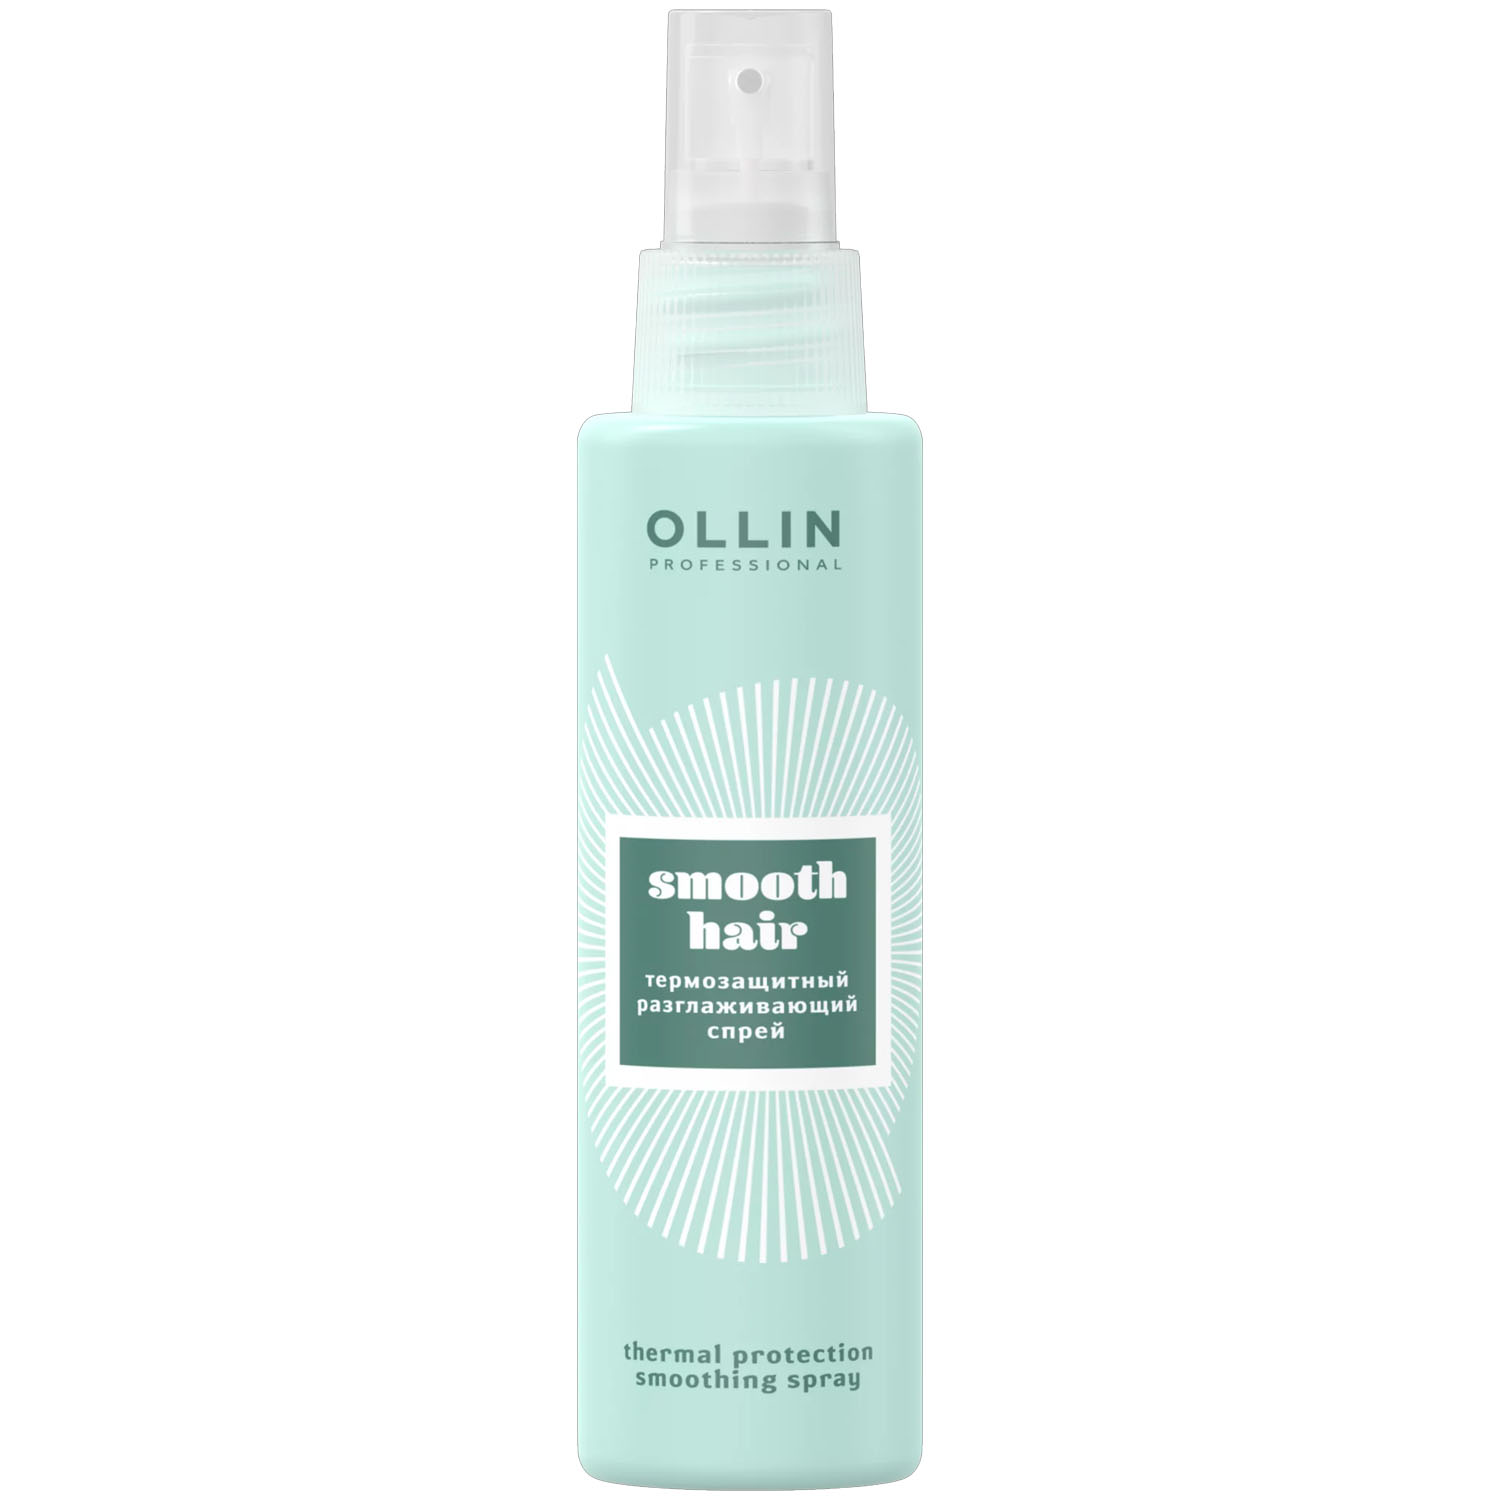 Ollin Professional Термозащитный разглаживающий спрей, 150 мл (Ollin Professional, Curl & Smooth Hair) разглаживающий термозащитный спрей с кератином cafe